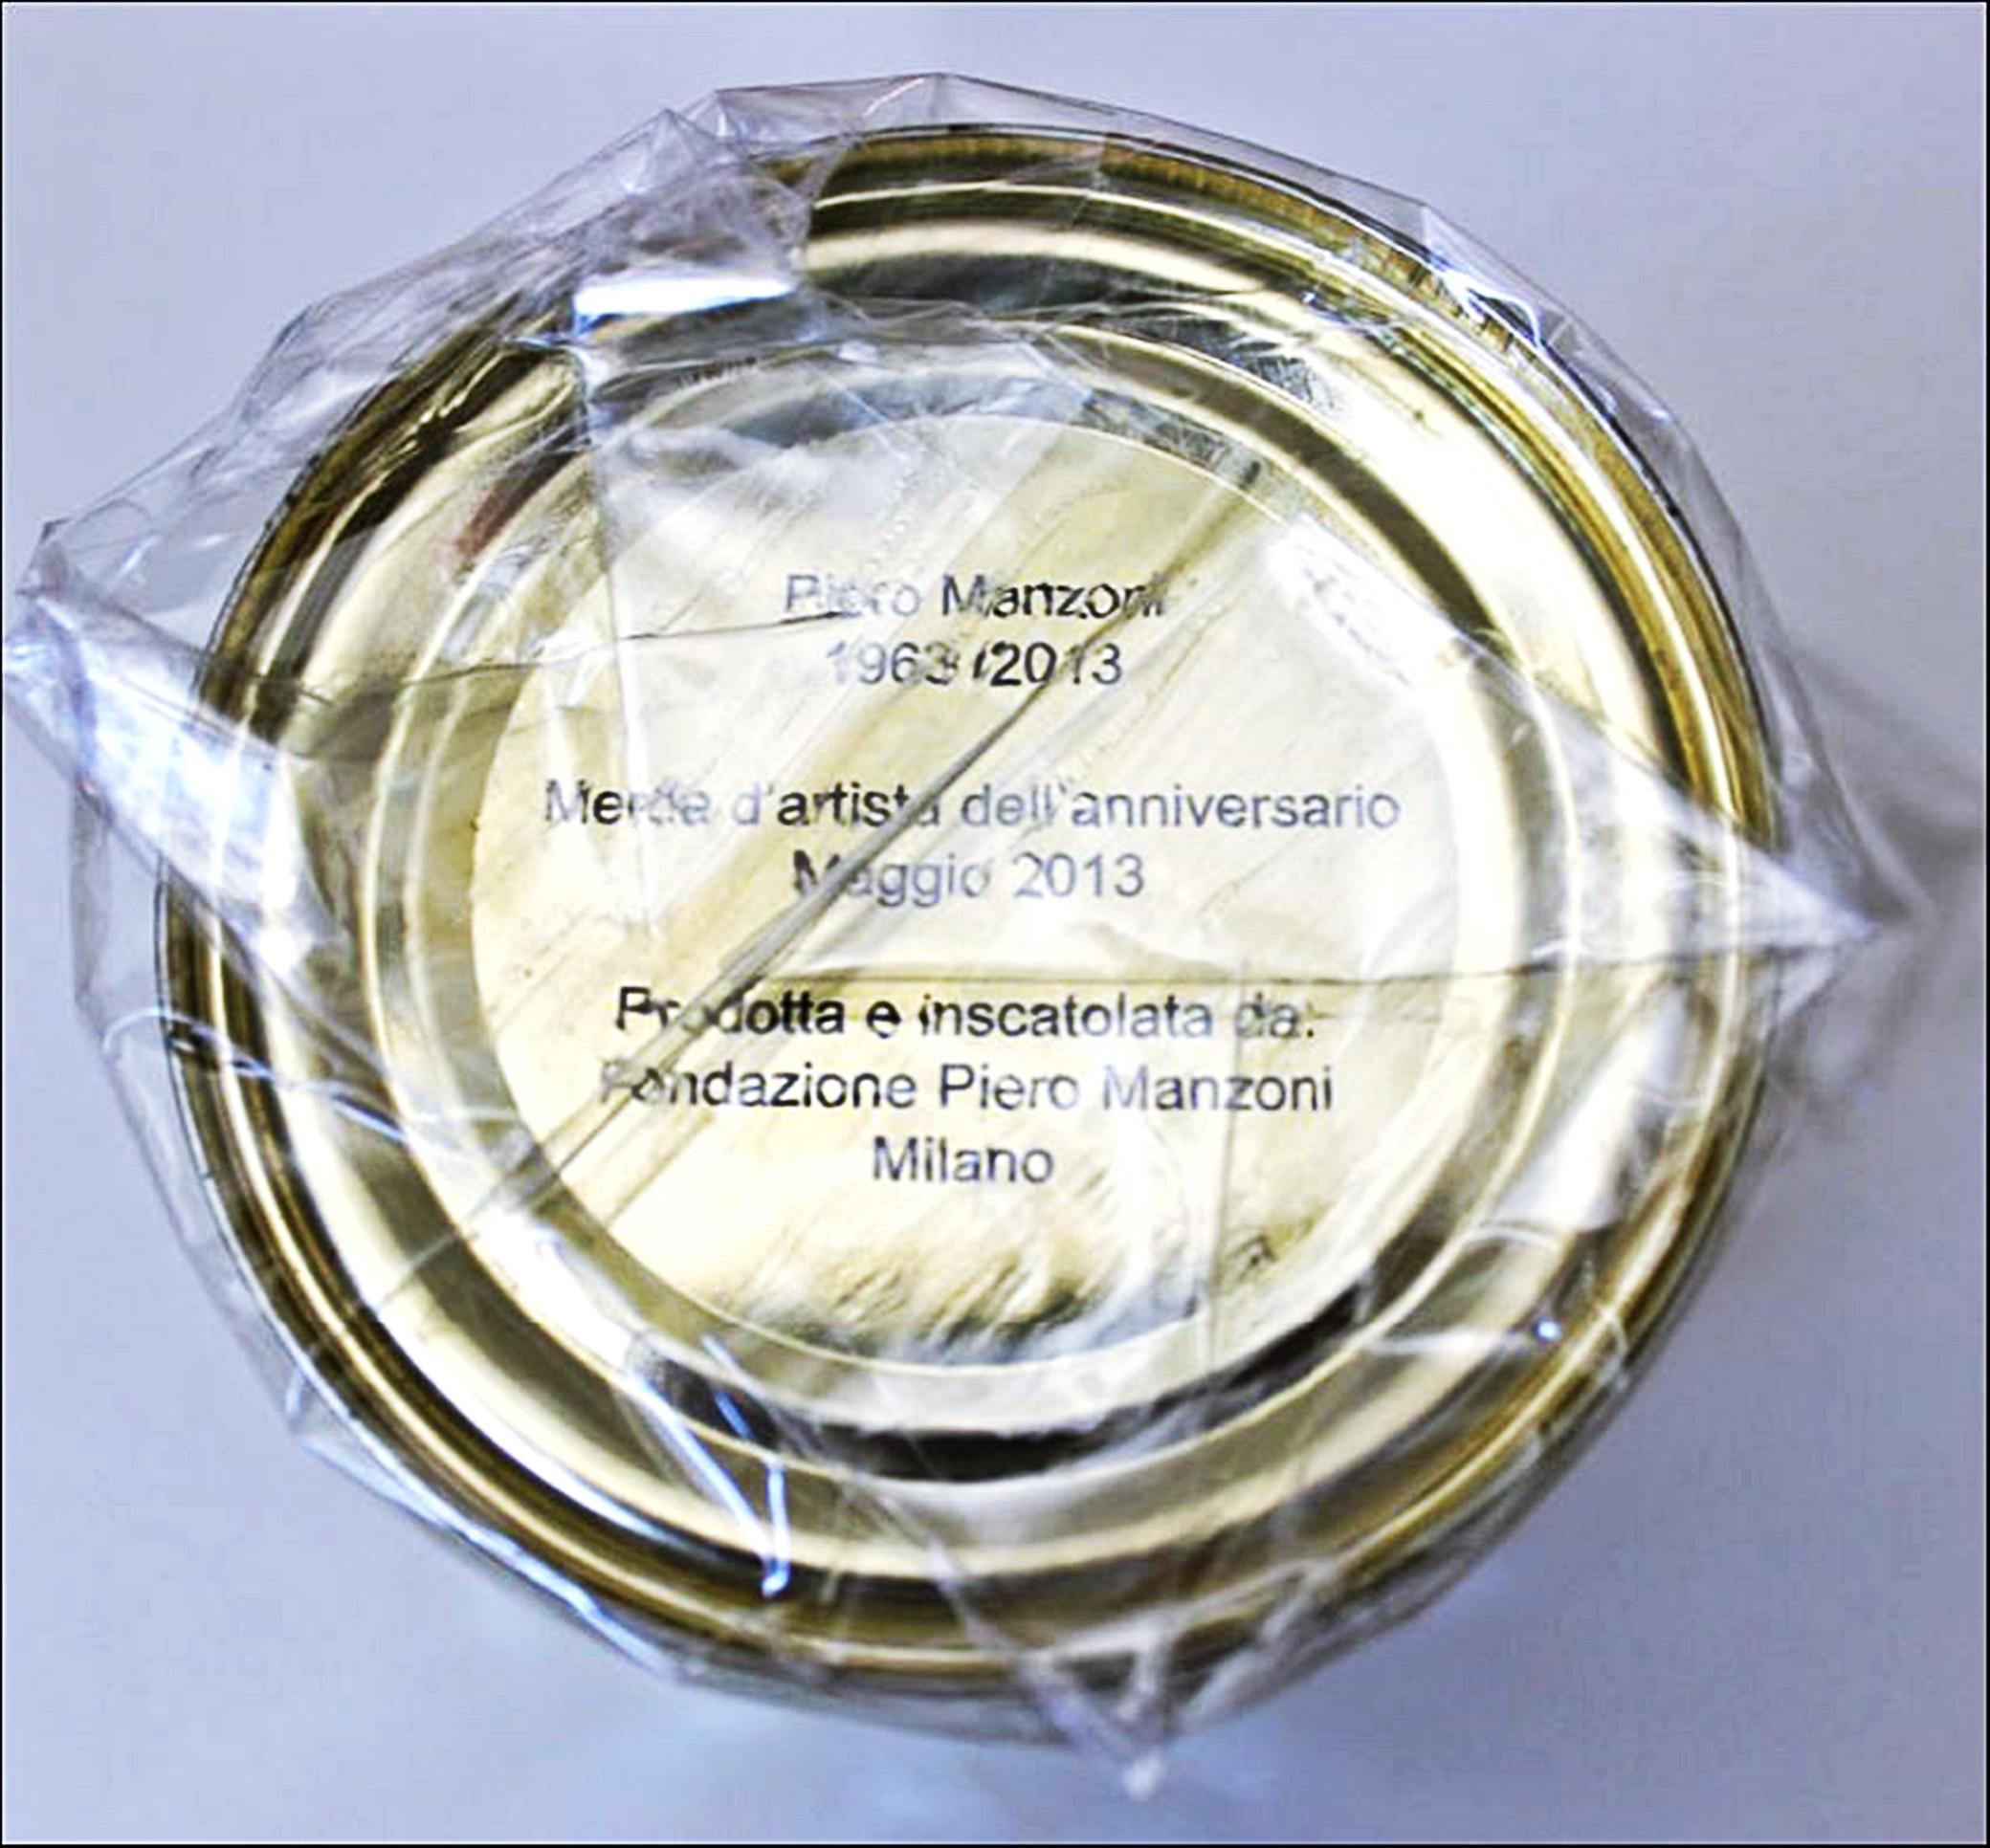 Piero Manzoni
Merda d'Artista - Merde d'Artiste - Künstlerscheiße, 2013
Versiegelte Blechdose in speziellem Offset-Lithografiepapier und eingeschweißt mit einem Fingerabdruck versiegelt
Die Signatur des Künstlers ist auf der Oberseite des Werks